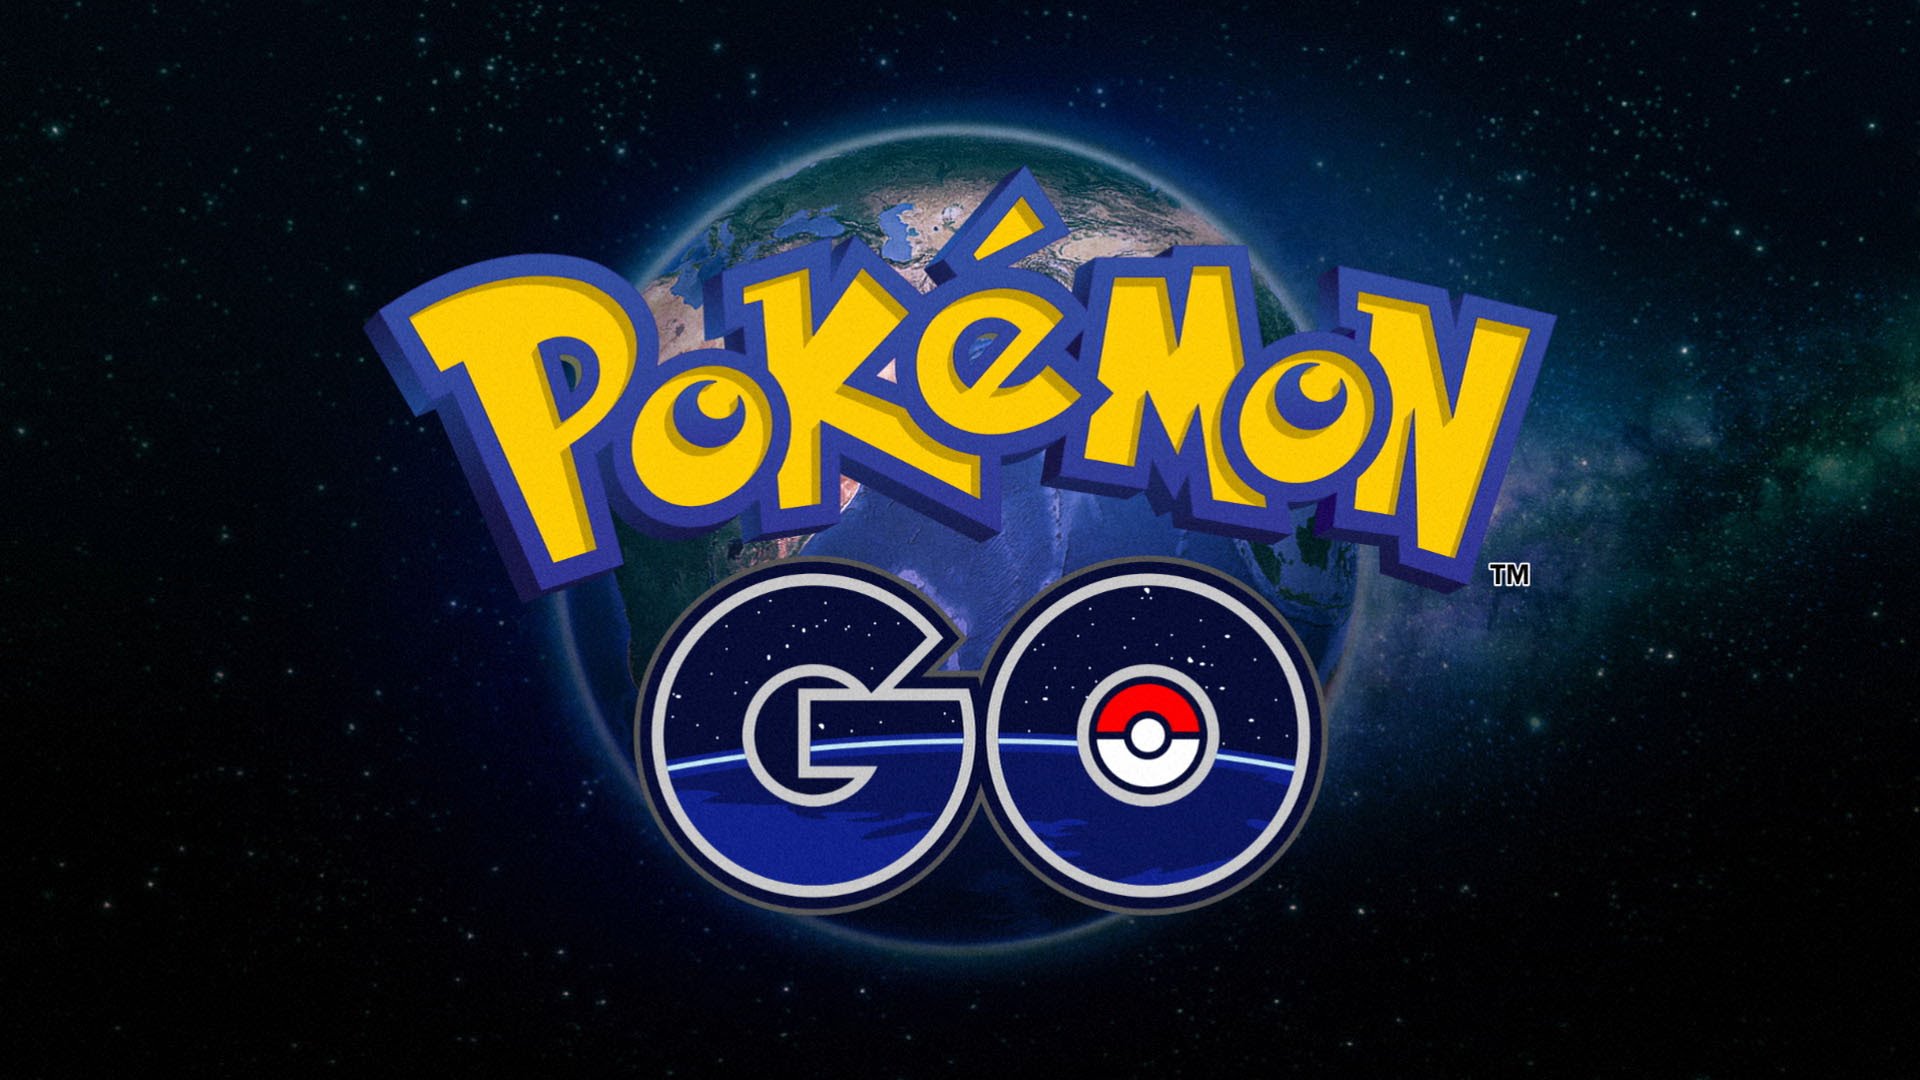 Eerste gameplaybeelden Pokémon Go gelekt